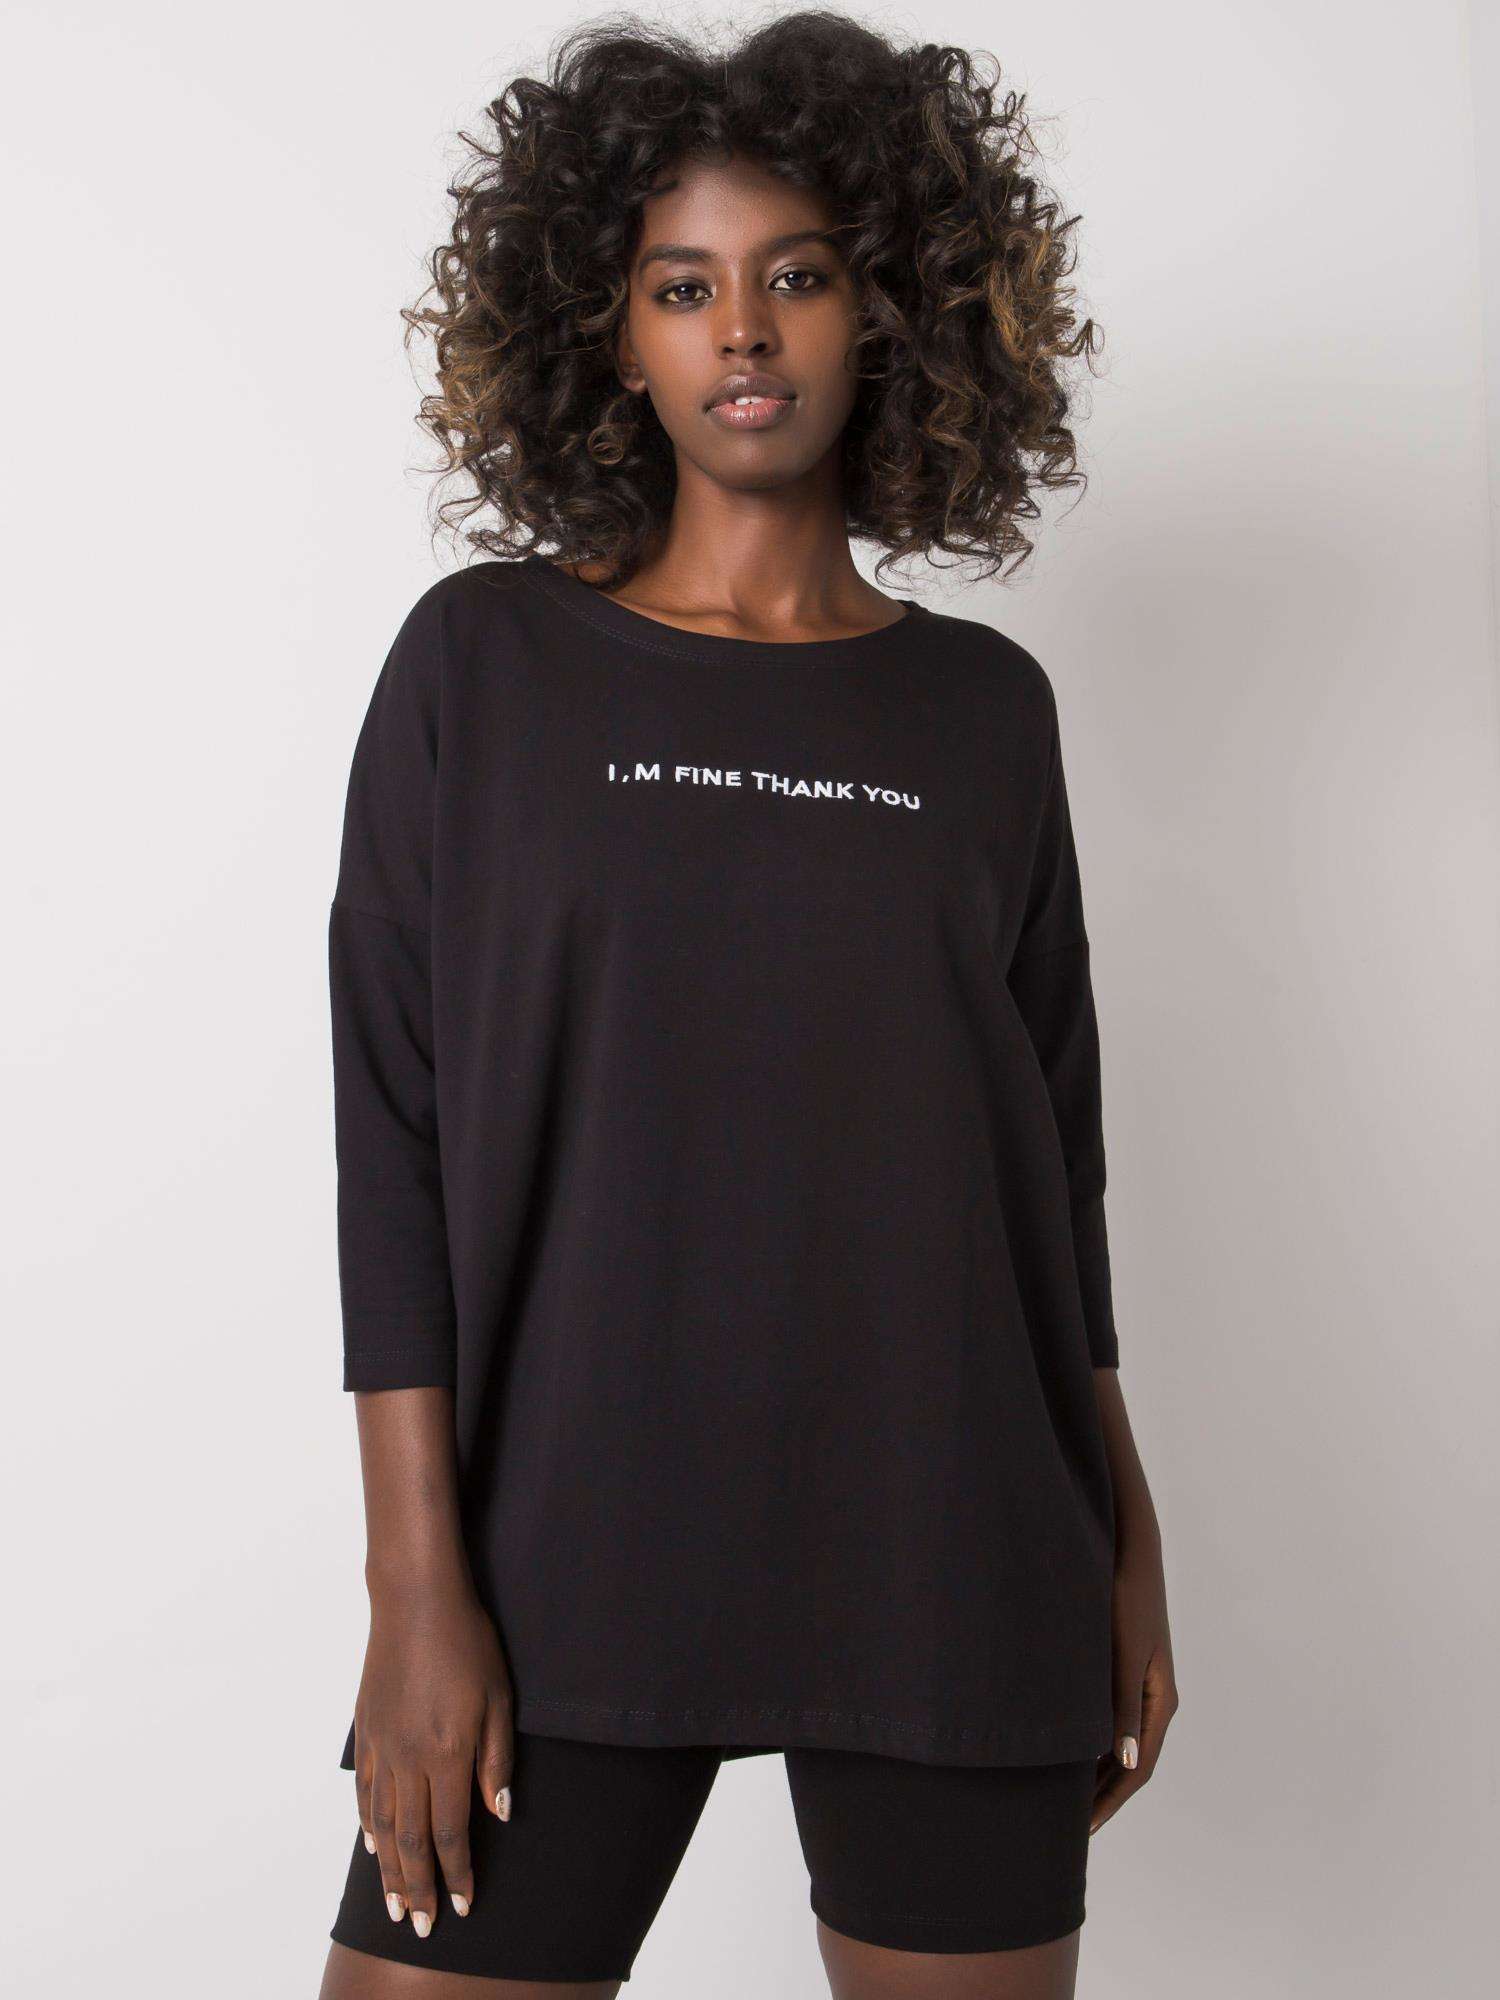 Černé dámské tričko s nápisem EM-BZ-114-B.24-black Velikost: L